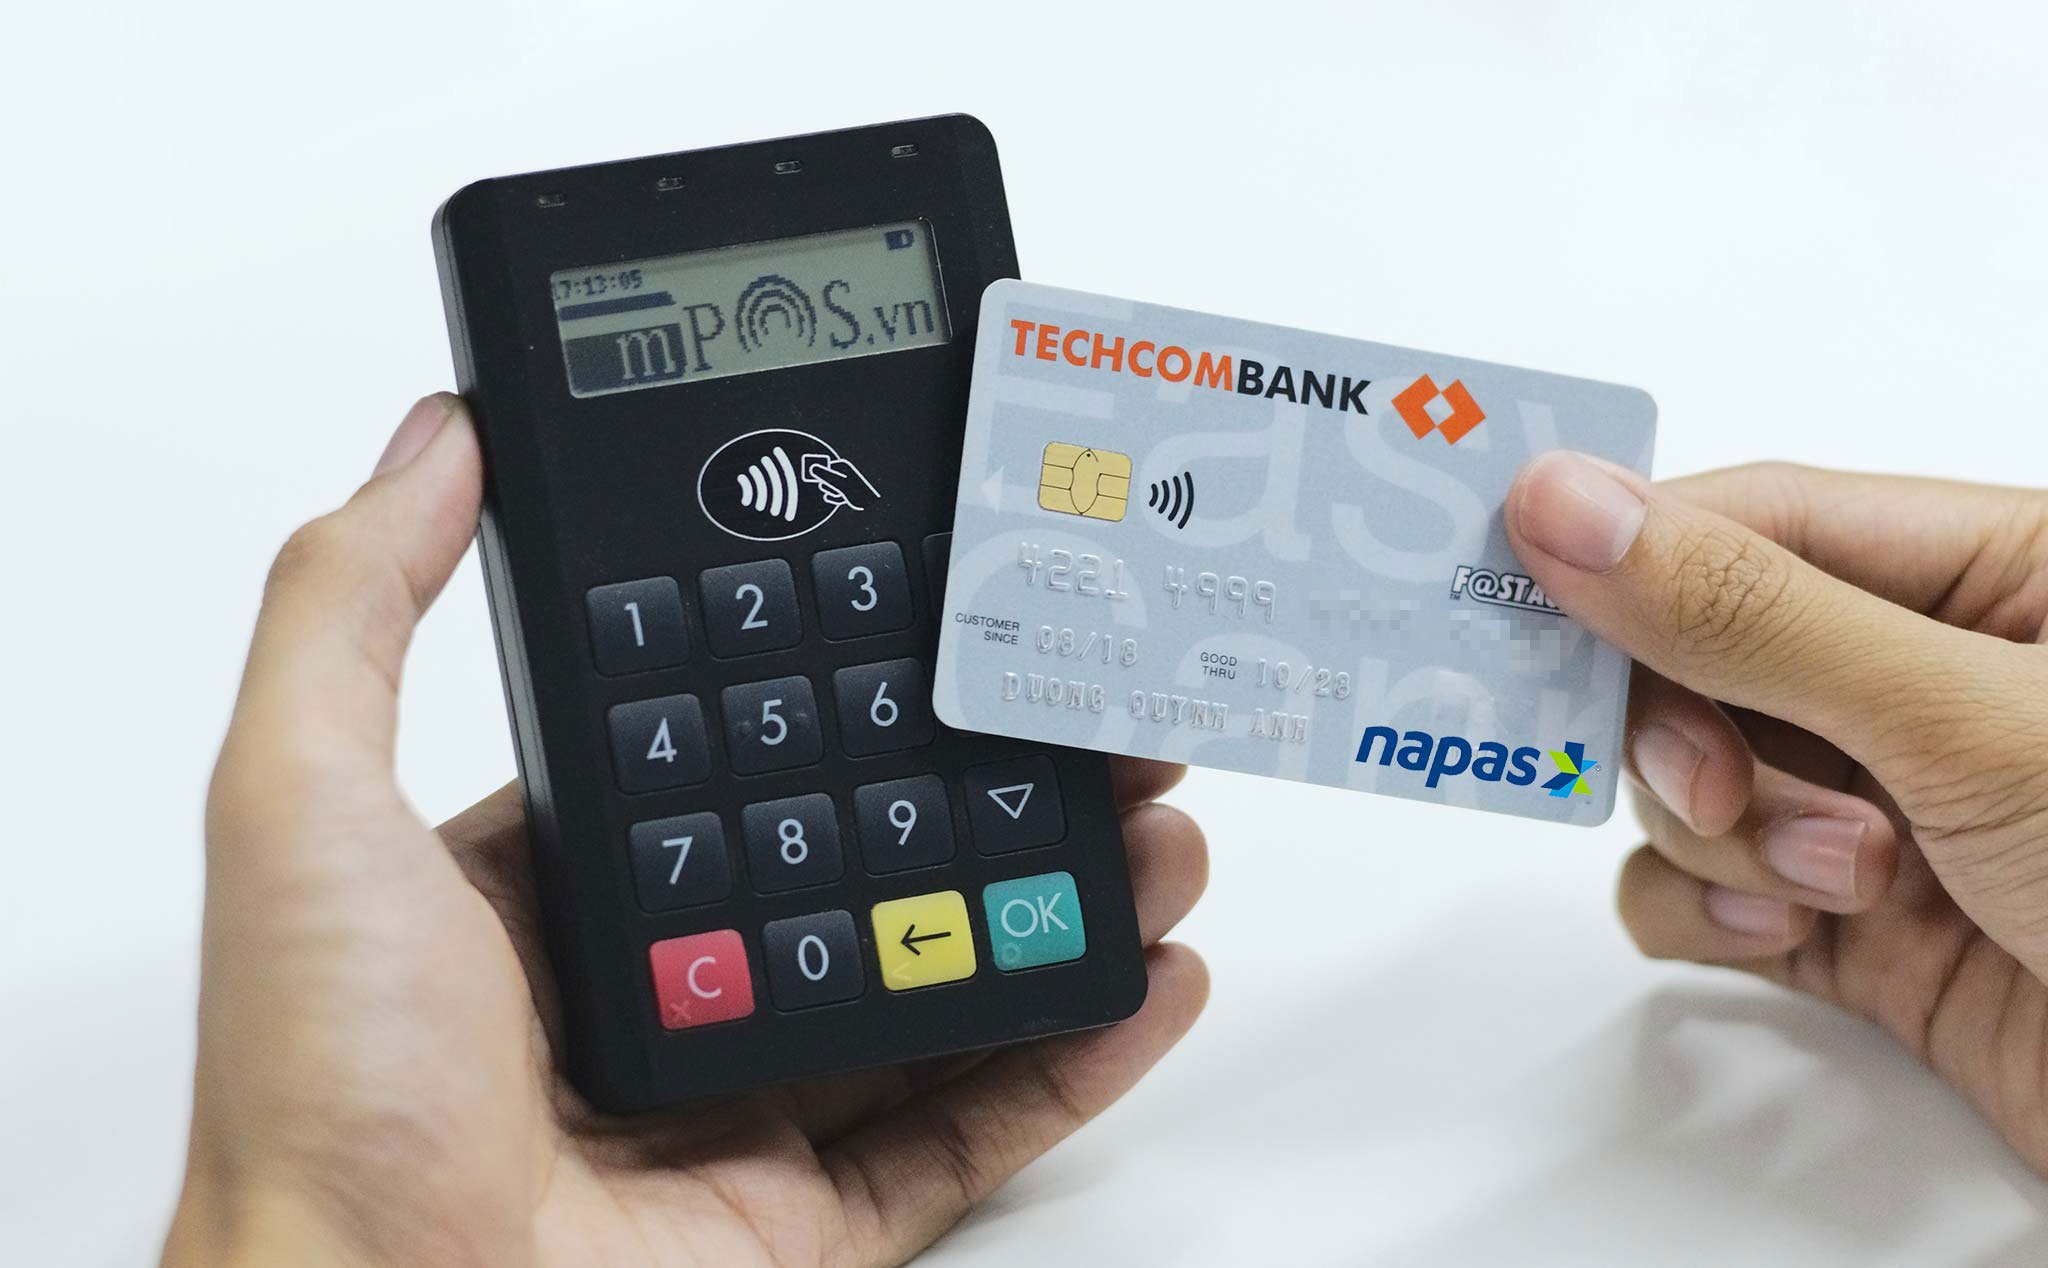 Thẻ ATM dùng chip và thanh toán chạm sẽ được phát hành tại Việt Nam từ ngày 28/05/2019